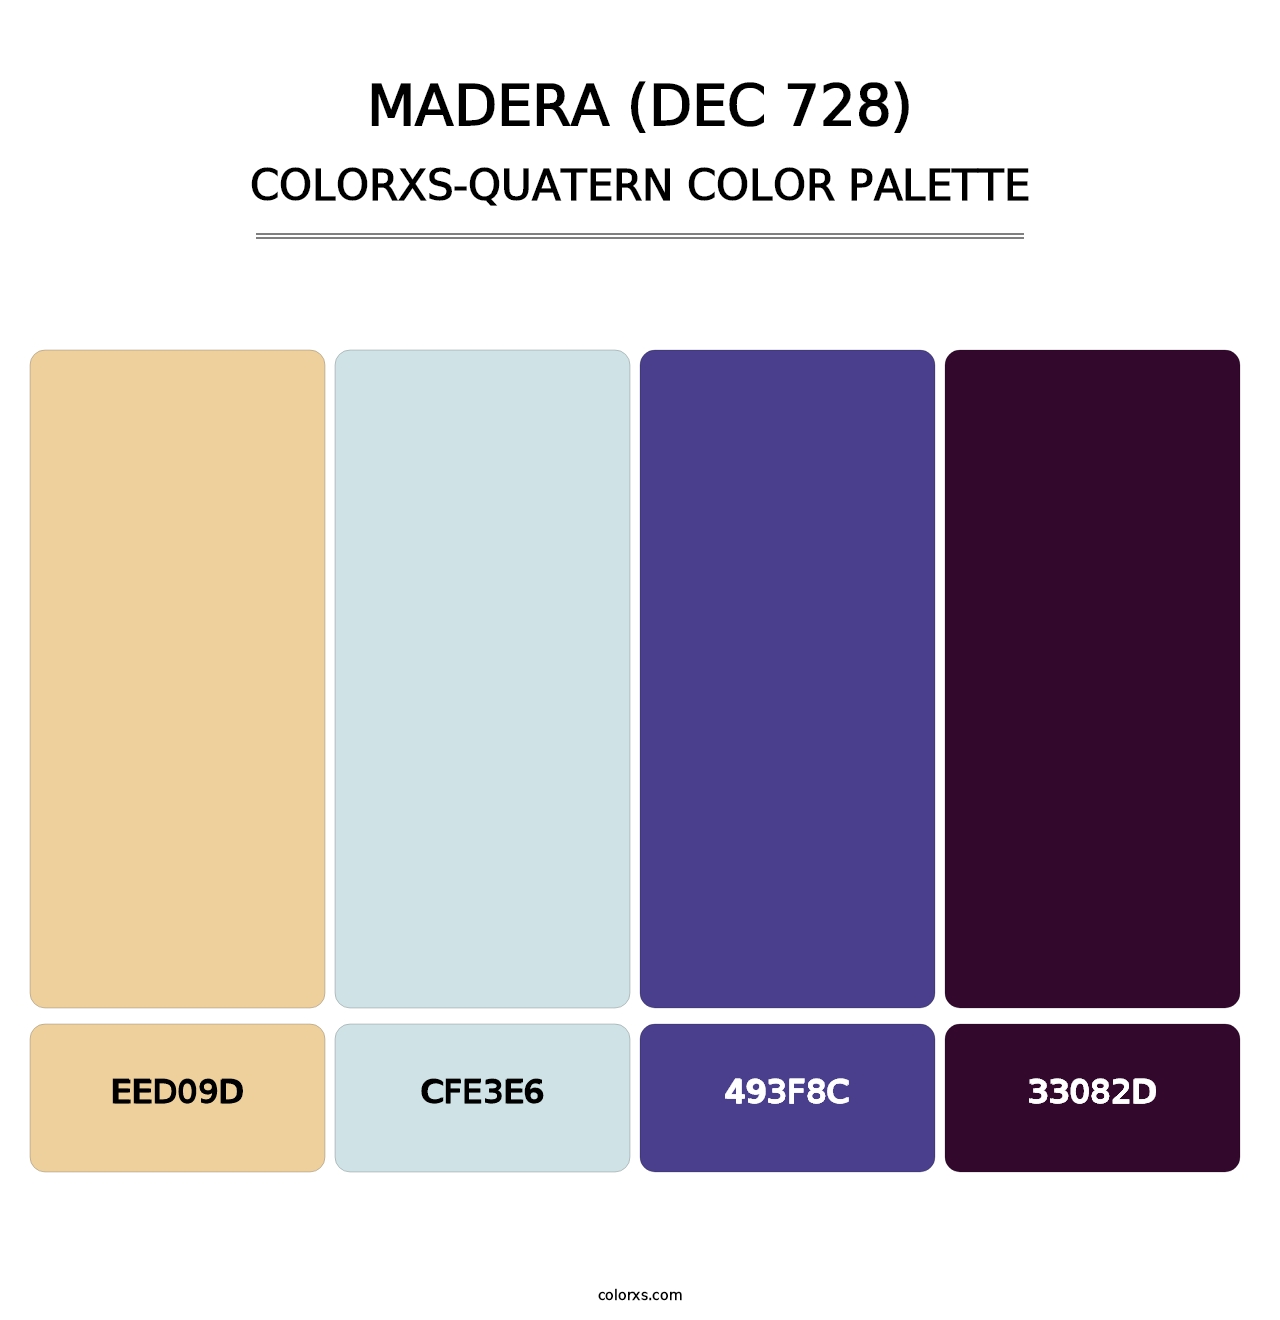 Madera (DEC 728) - Colorxs Quatern Palette